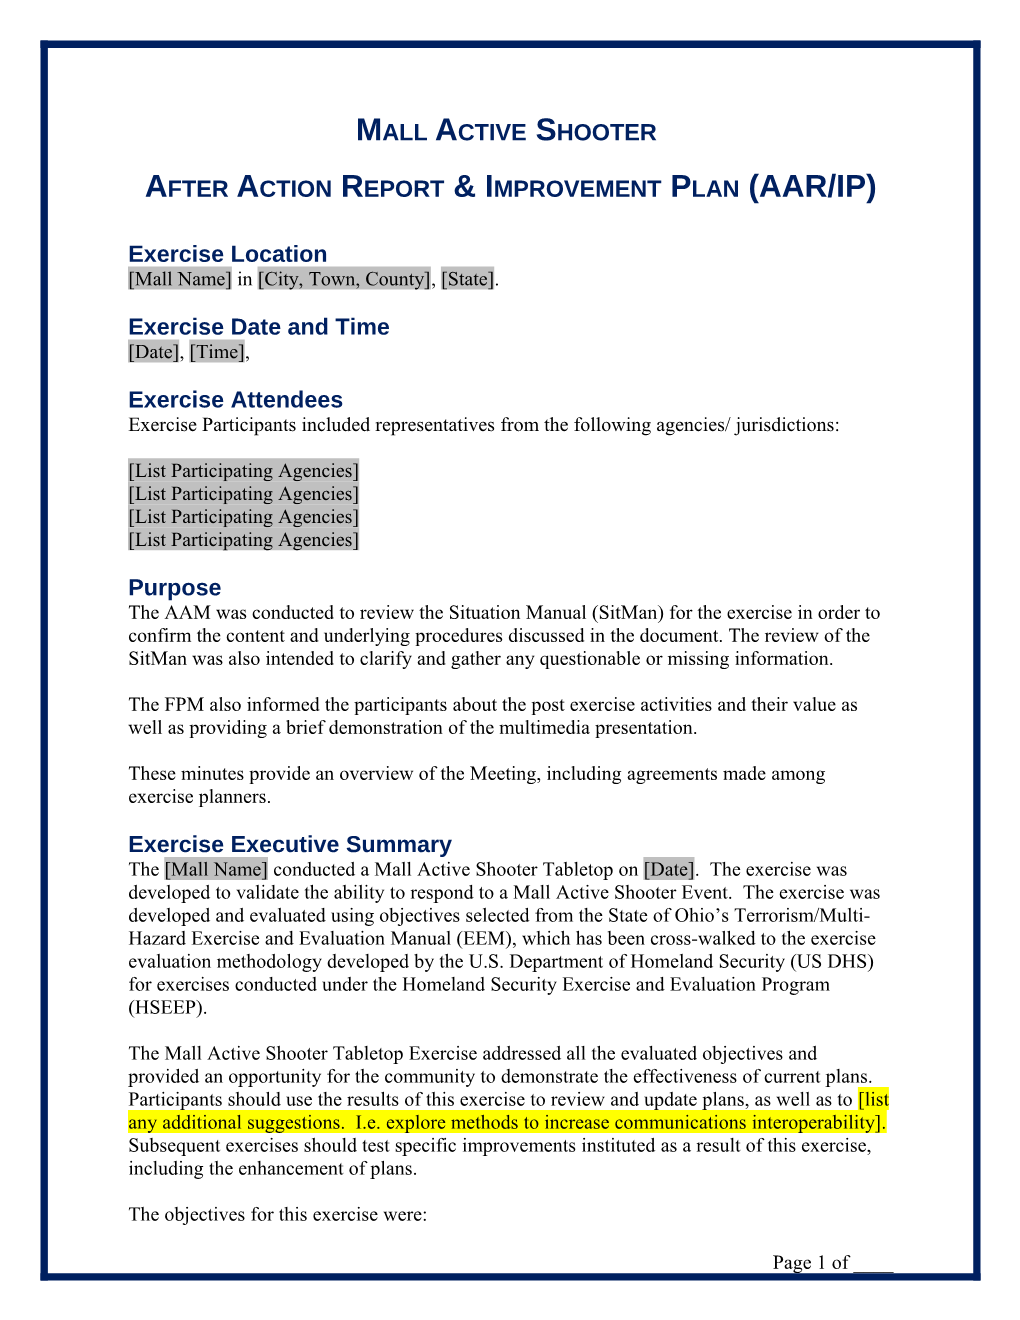 After Action Report & Improvement Plan (AAR/IP)